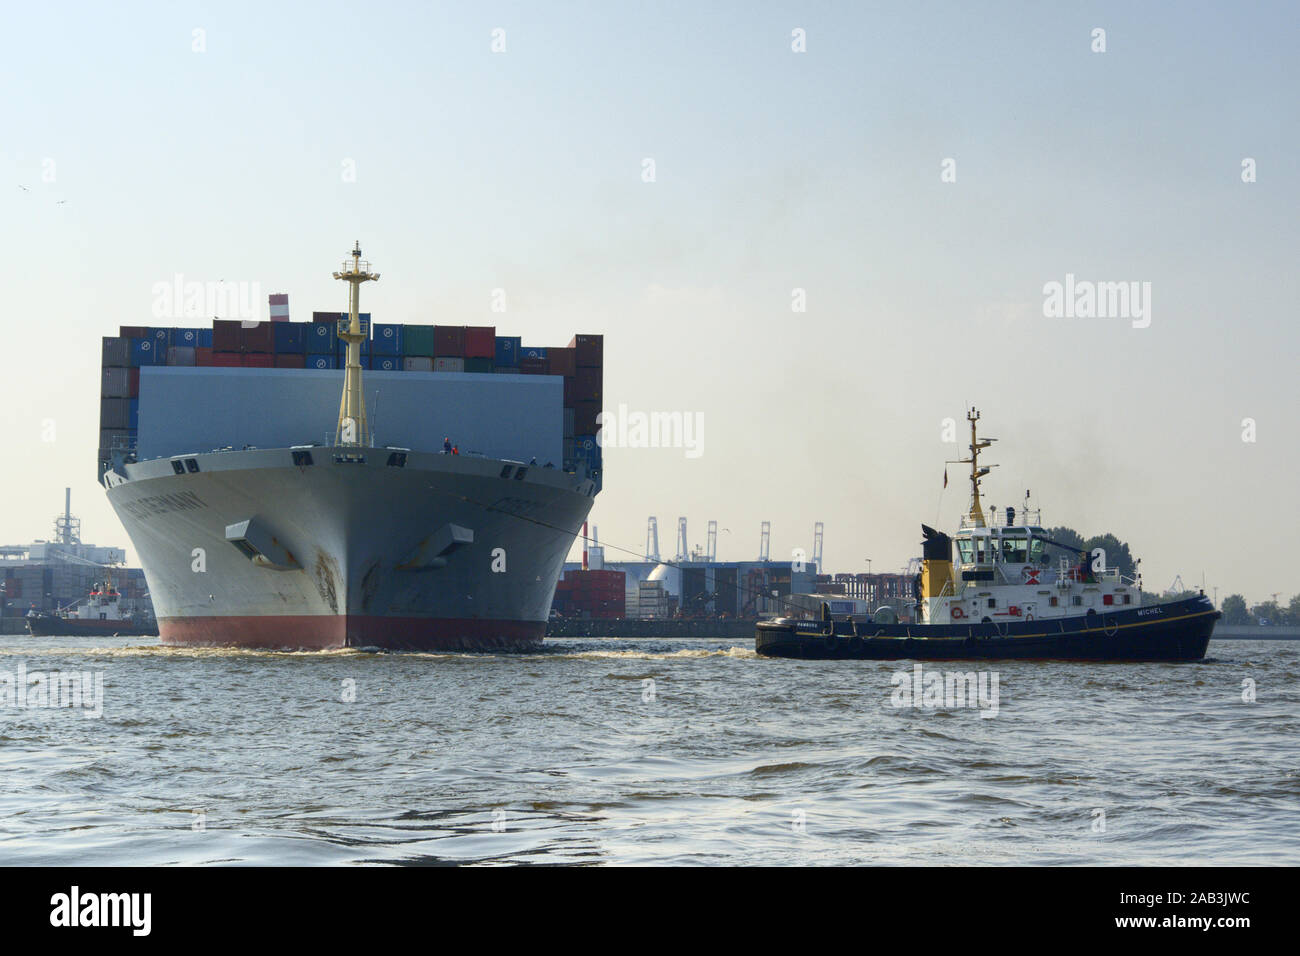 Mit Containerschiff Schlepper im Hamburger Hafen Foto de stock